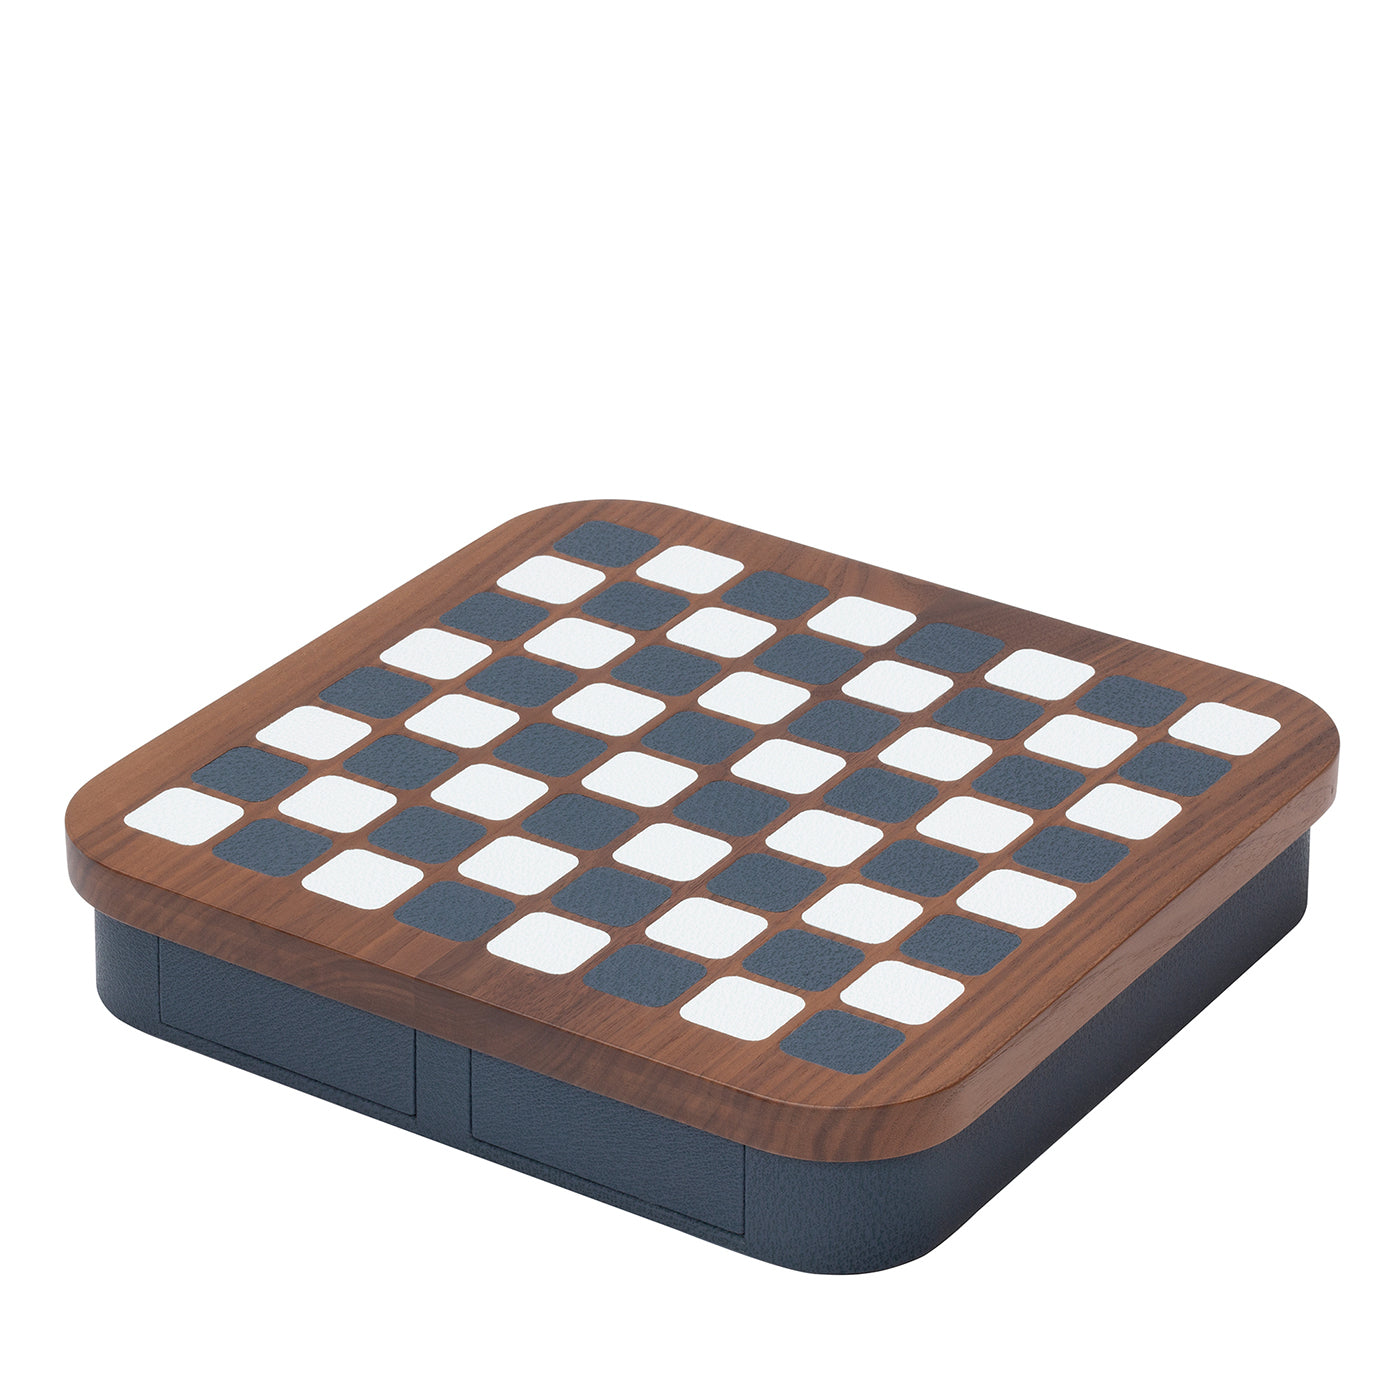 Juego de ajedrez de madera Delos - Vista principal